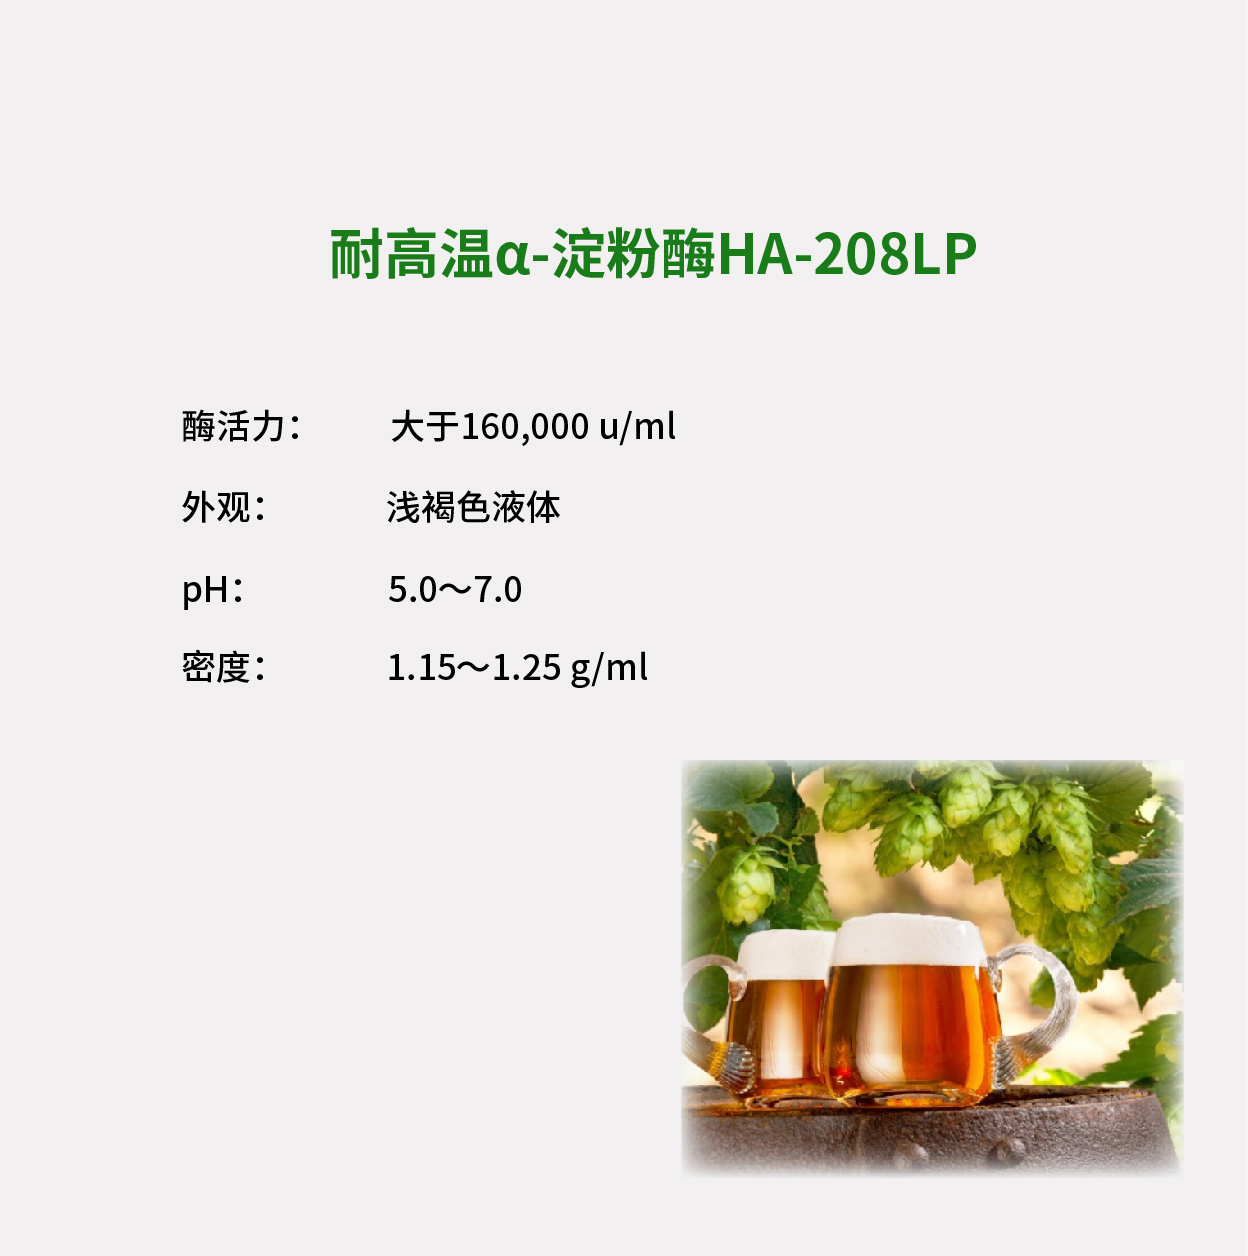 高效α-淀粉酶HA-208LP